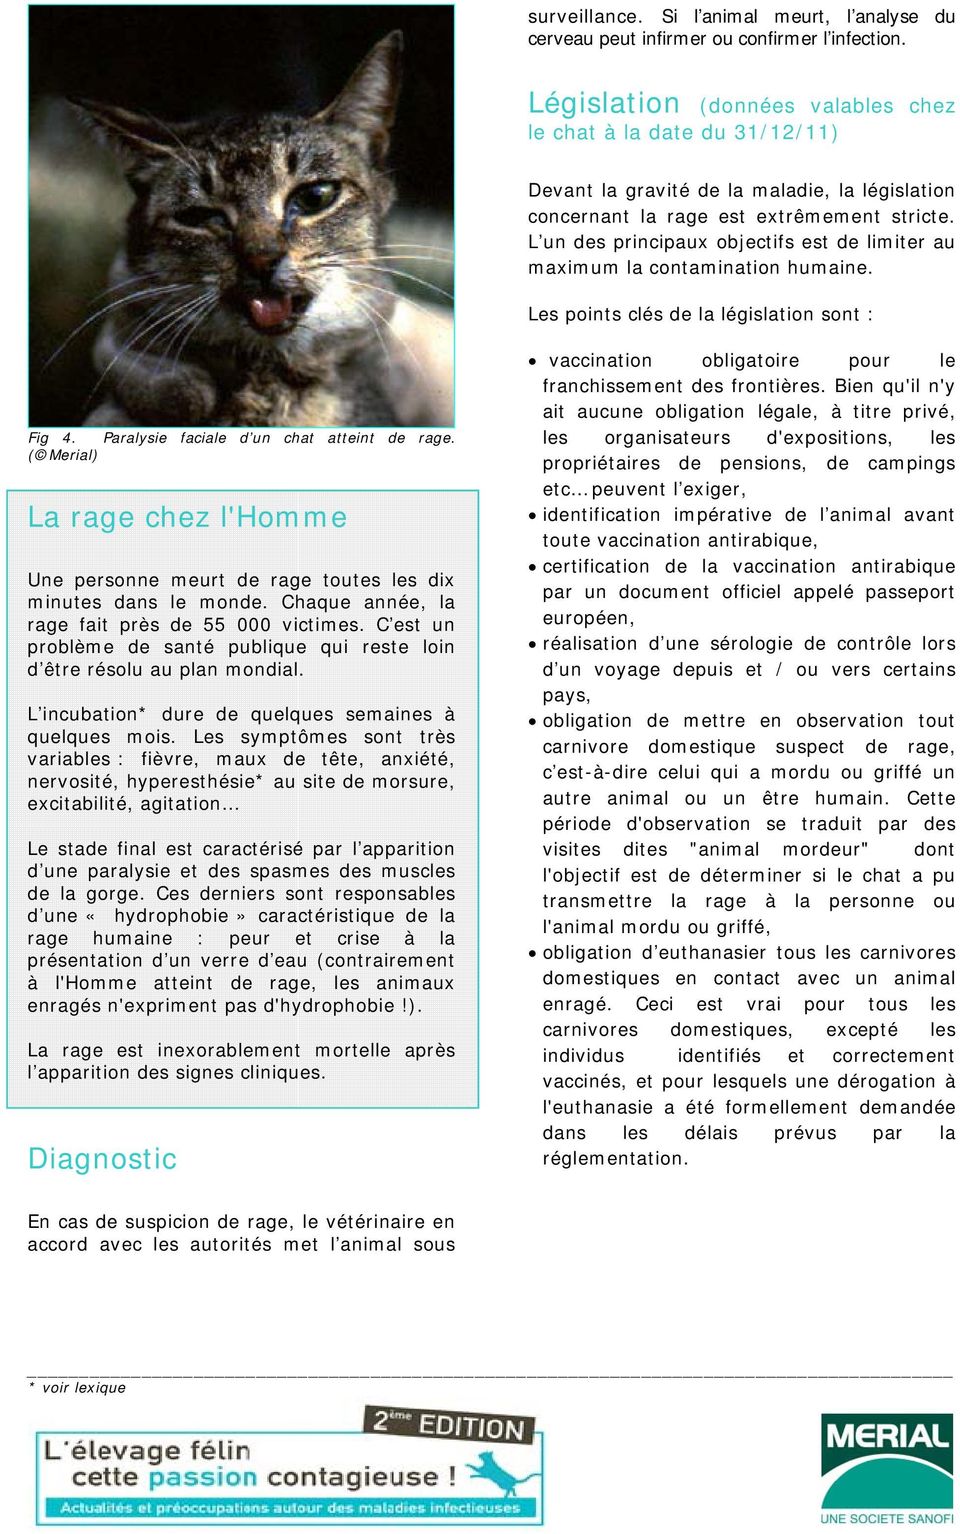 L un des principaux objectifs est de limiter au maximum la contamination humaine. Les points clés de la législation sont : Fig 4. Paralysie faciale d un chat atteint de rage.